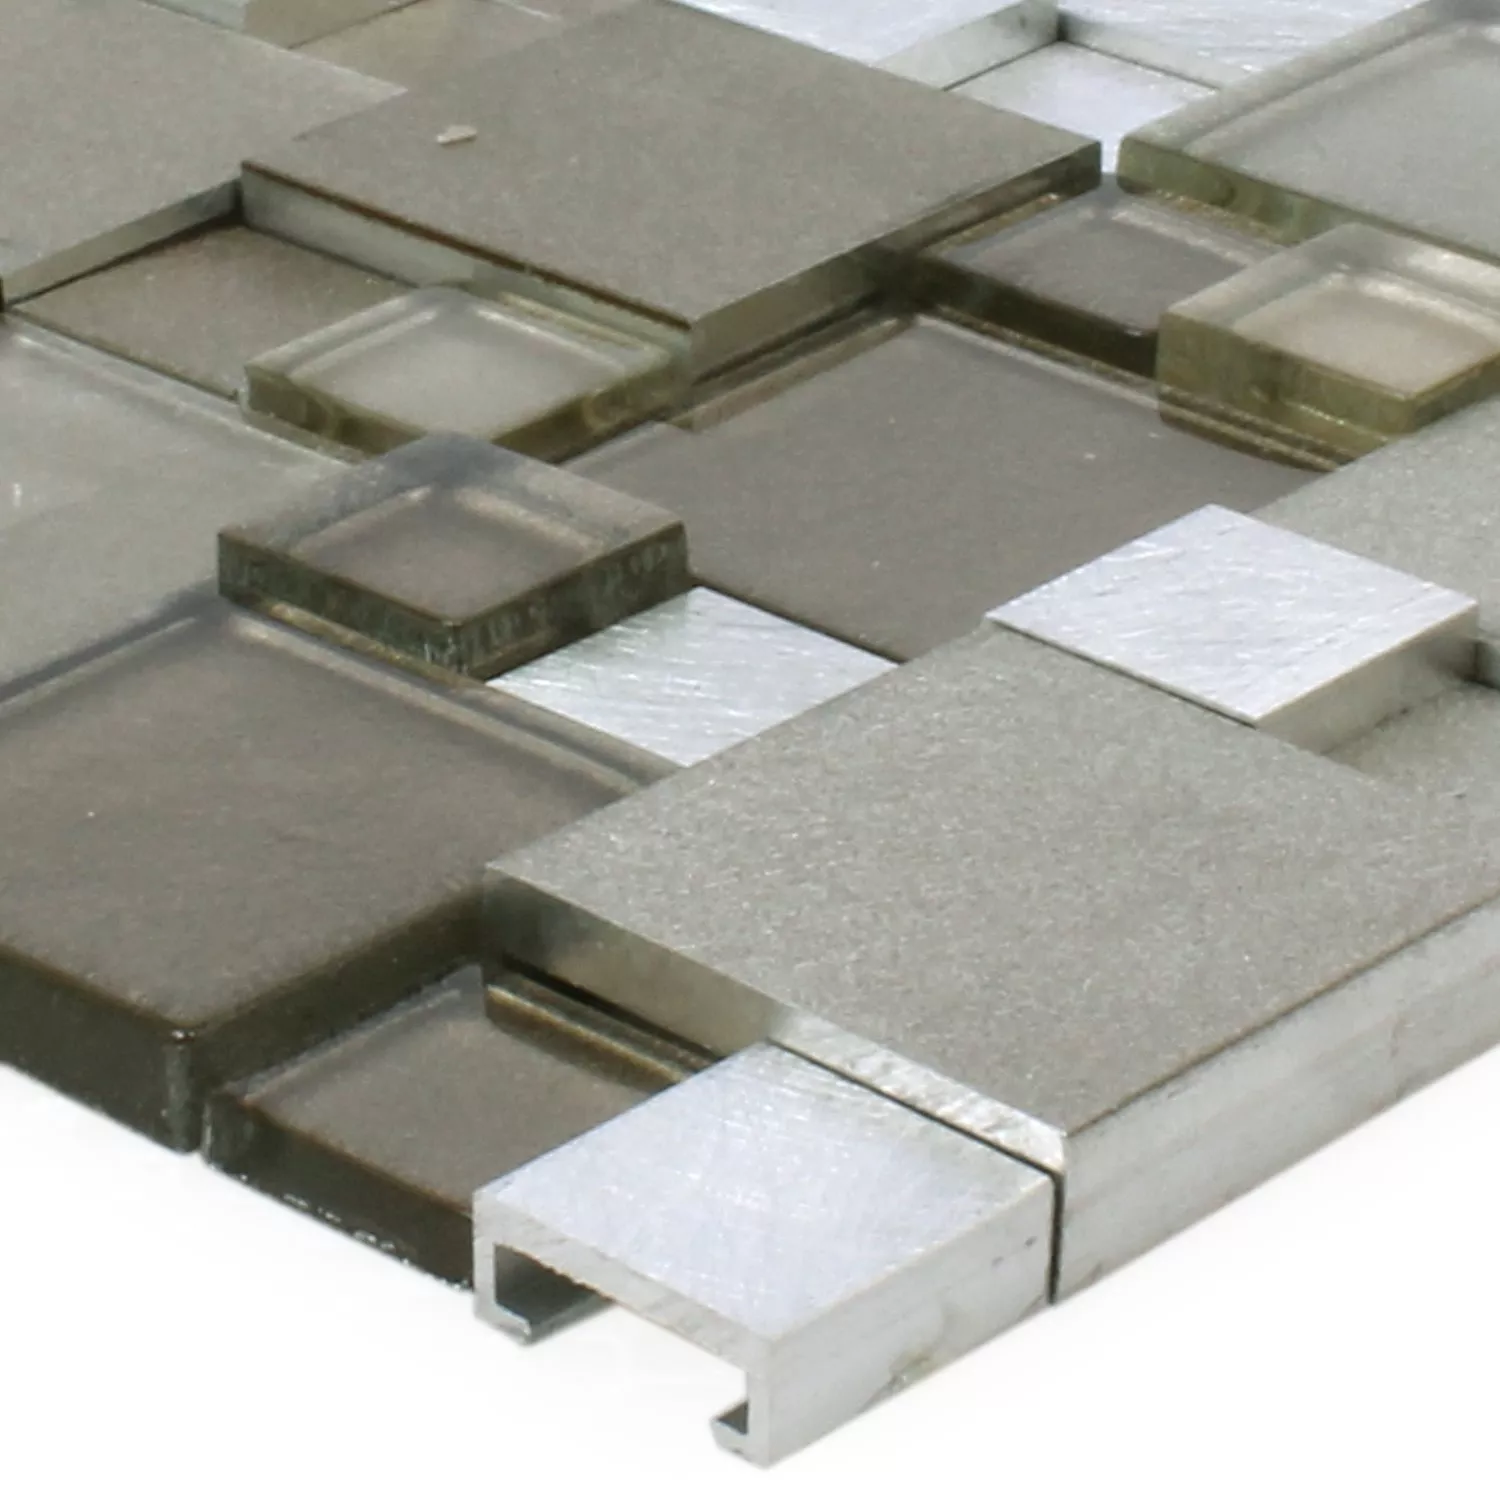 Campione Mosaico Vetro Alluminio Condor 3D Marrone Mix